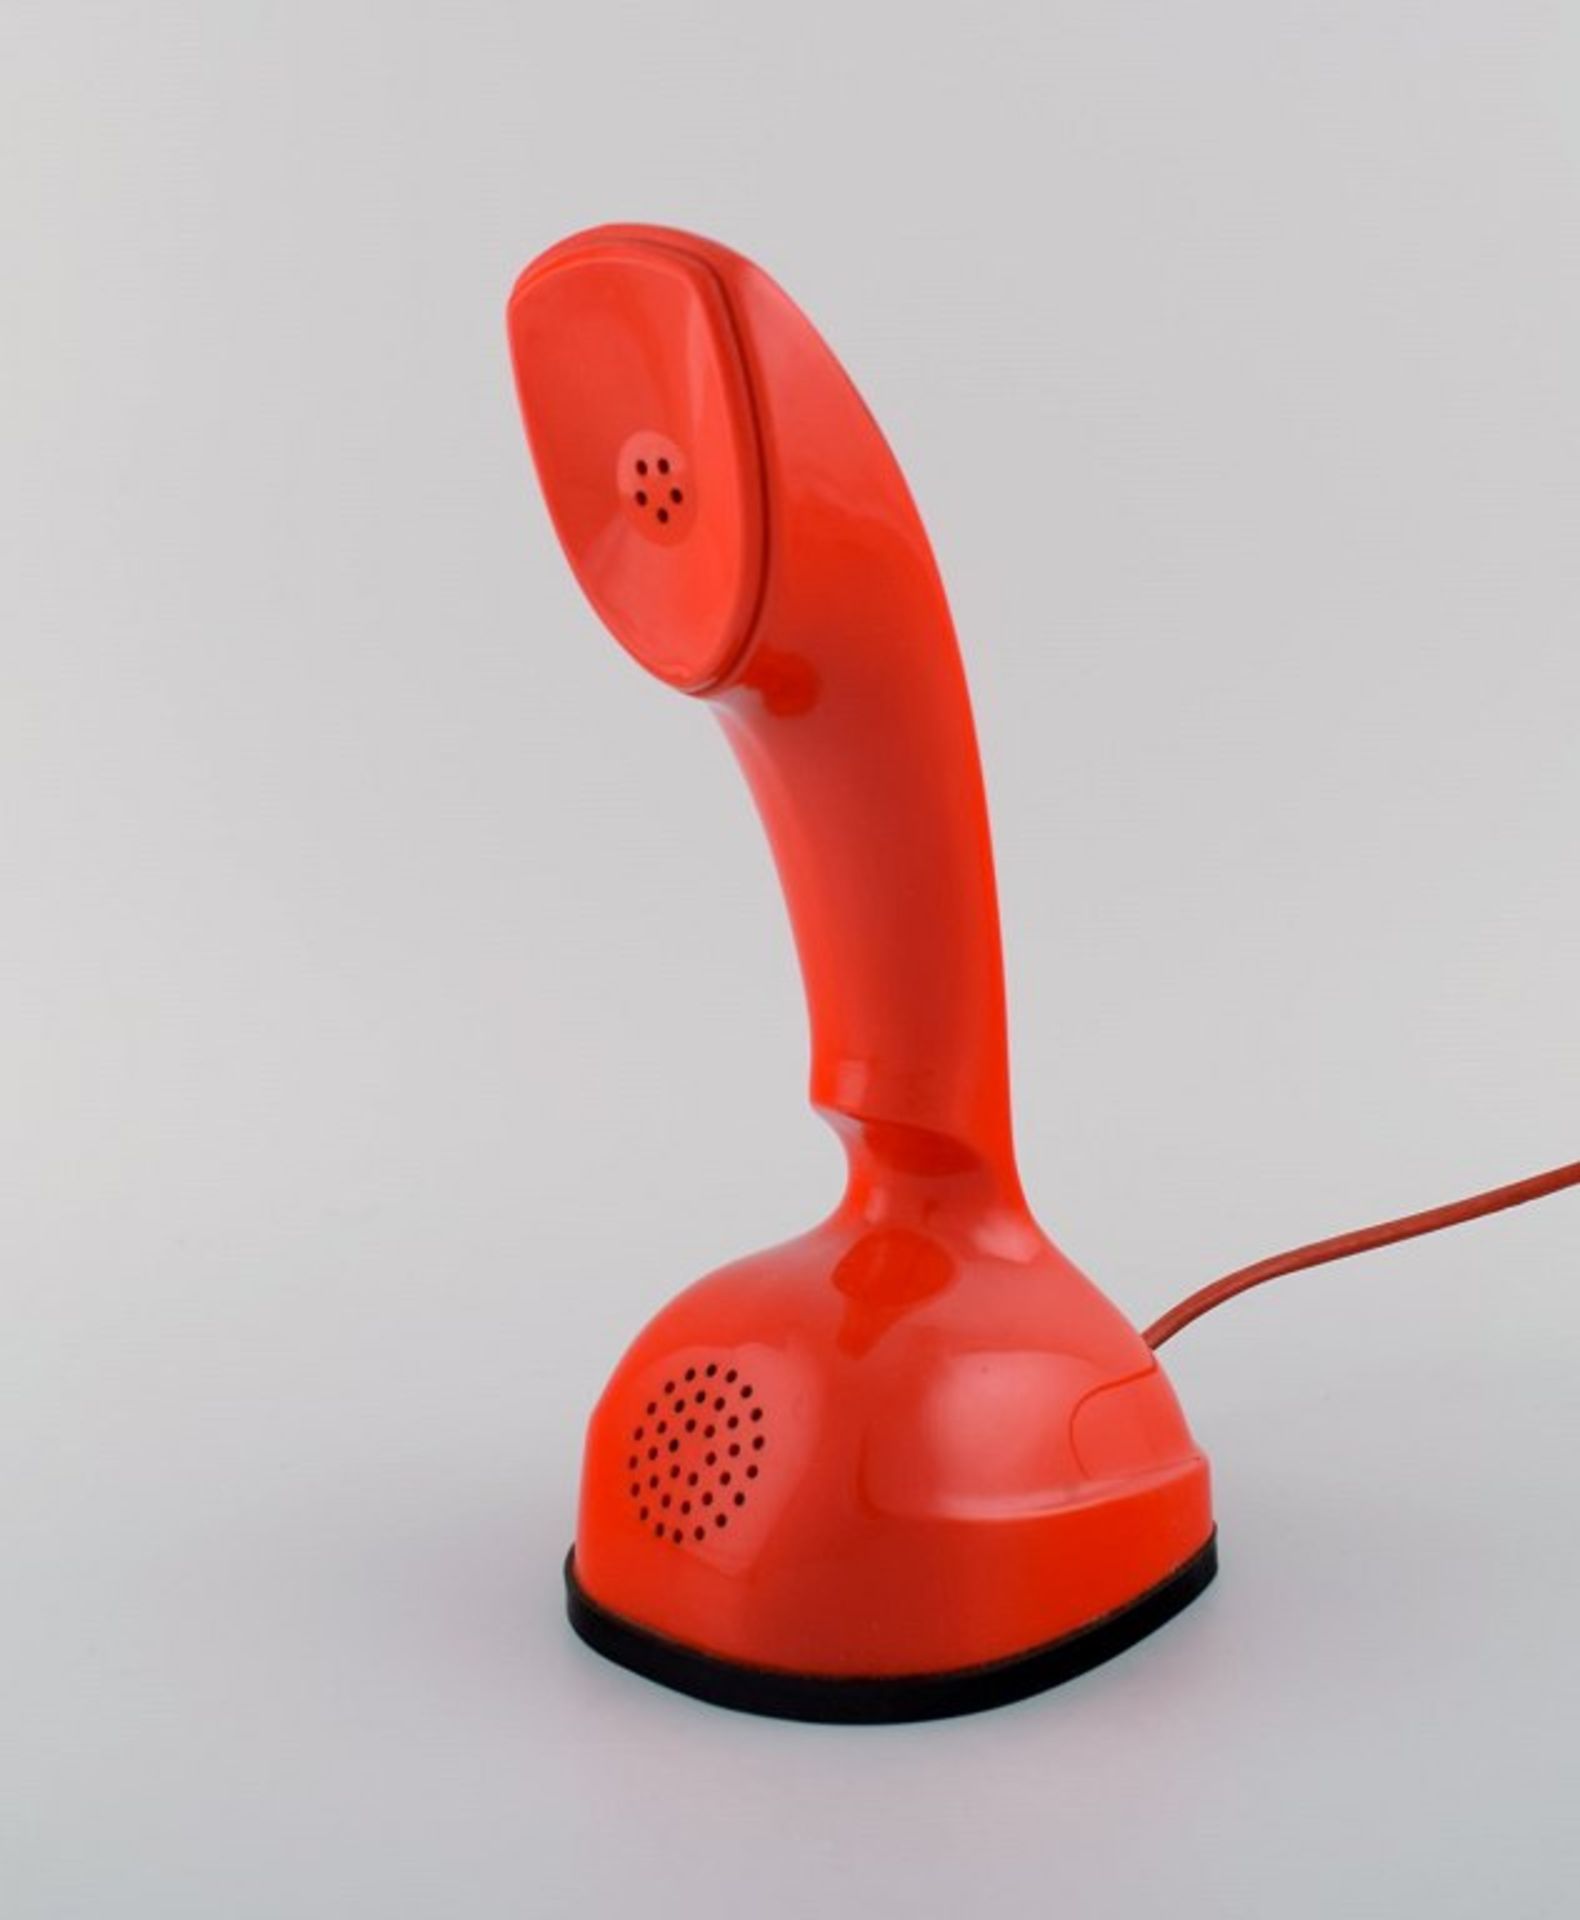 Ericsson Cobra Telefon. Rot. Wählscheibe im Boden. Schwedischer Design Klassiker. Nicht geprüft.